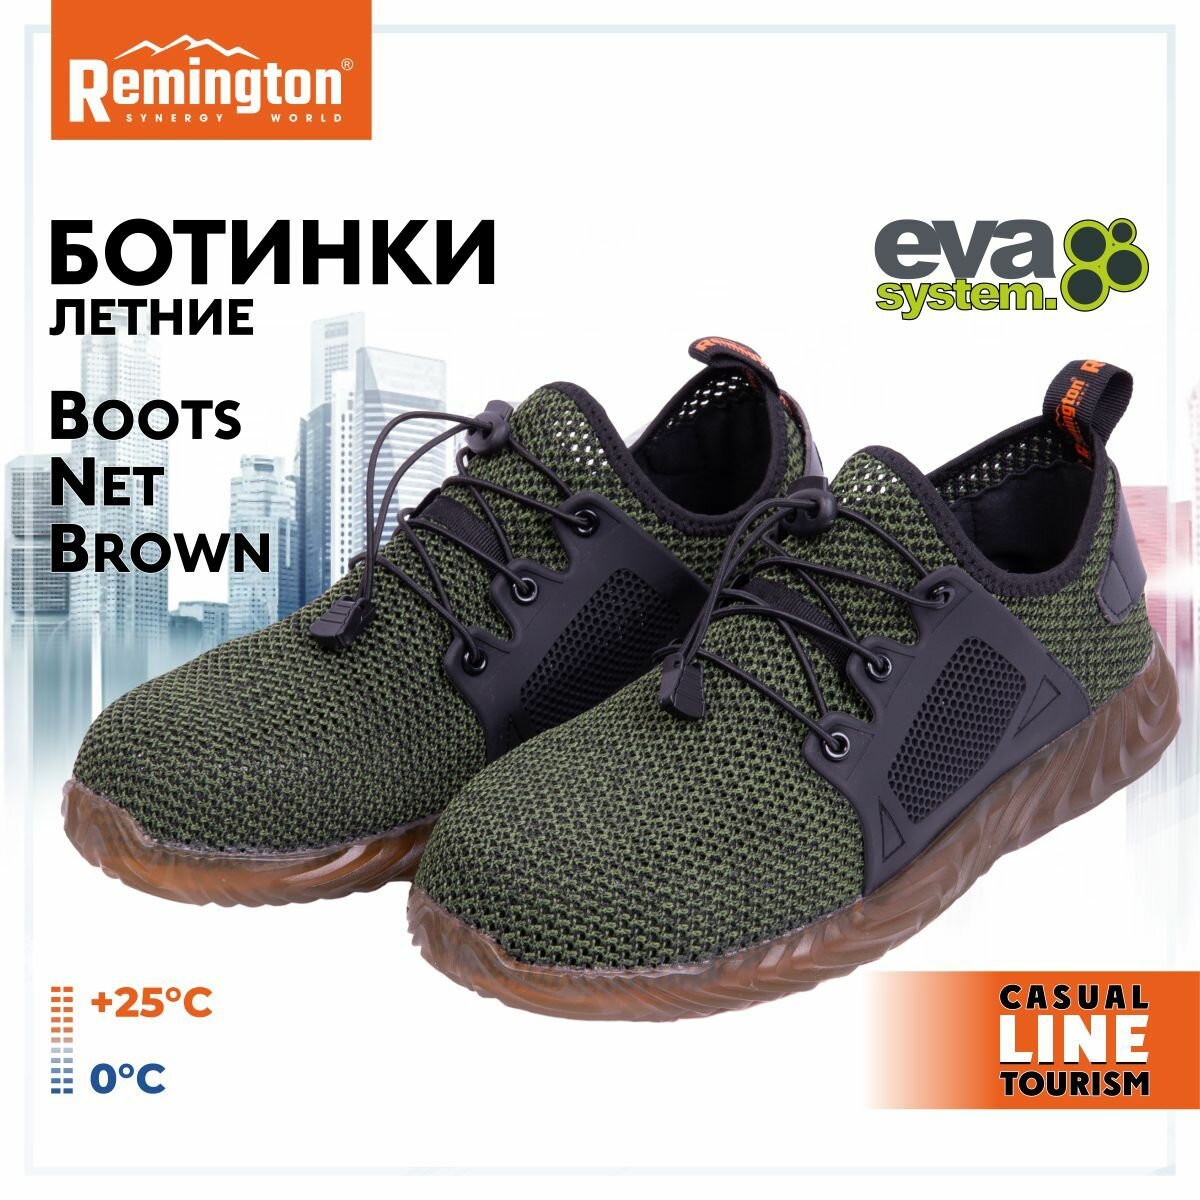 Ботинки Remington Boots Net Brown р. 45 RU0044-901